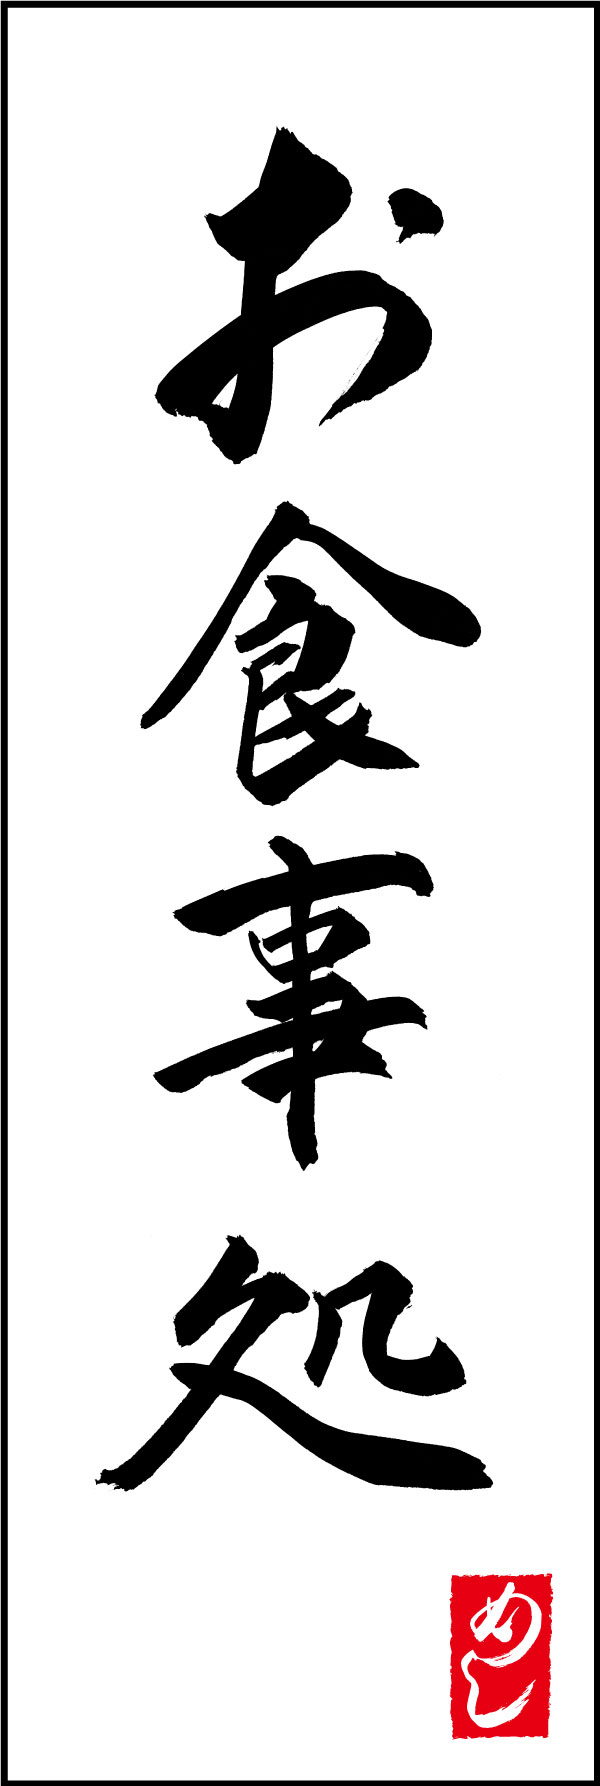 お食事処 167_01 「お食事処」ののぼりです。江戸文字職人 加藤木大介氏による、手書きの筆文字です。完全書き下ろし、唯一無二ののぼりは当店だけのオリジナル商品です。（Y.M）